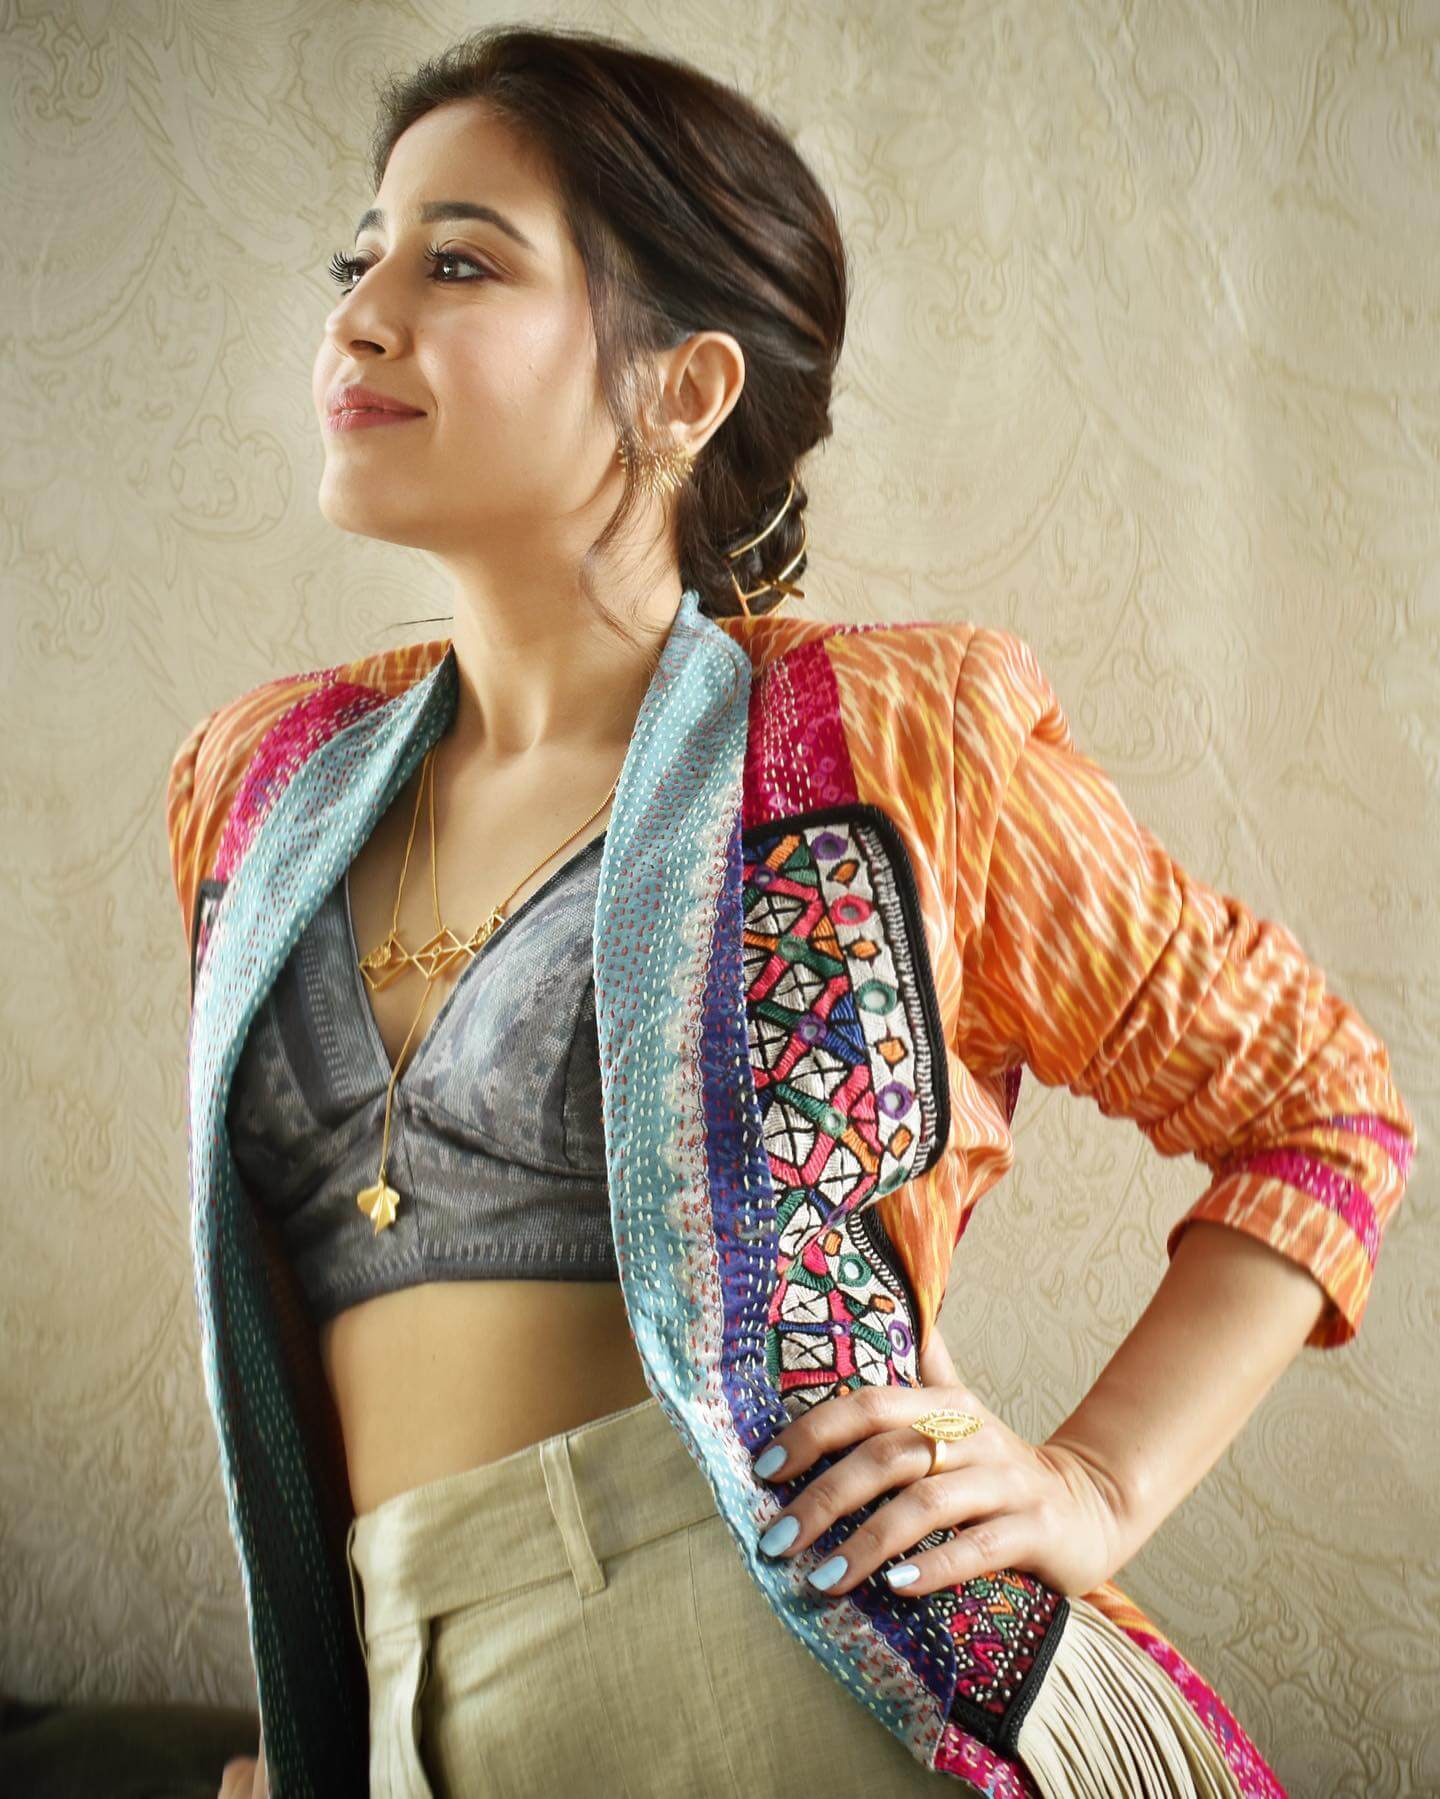 Actress Shweta Tripathi stylish close up shot